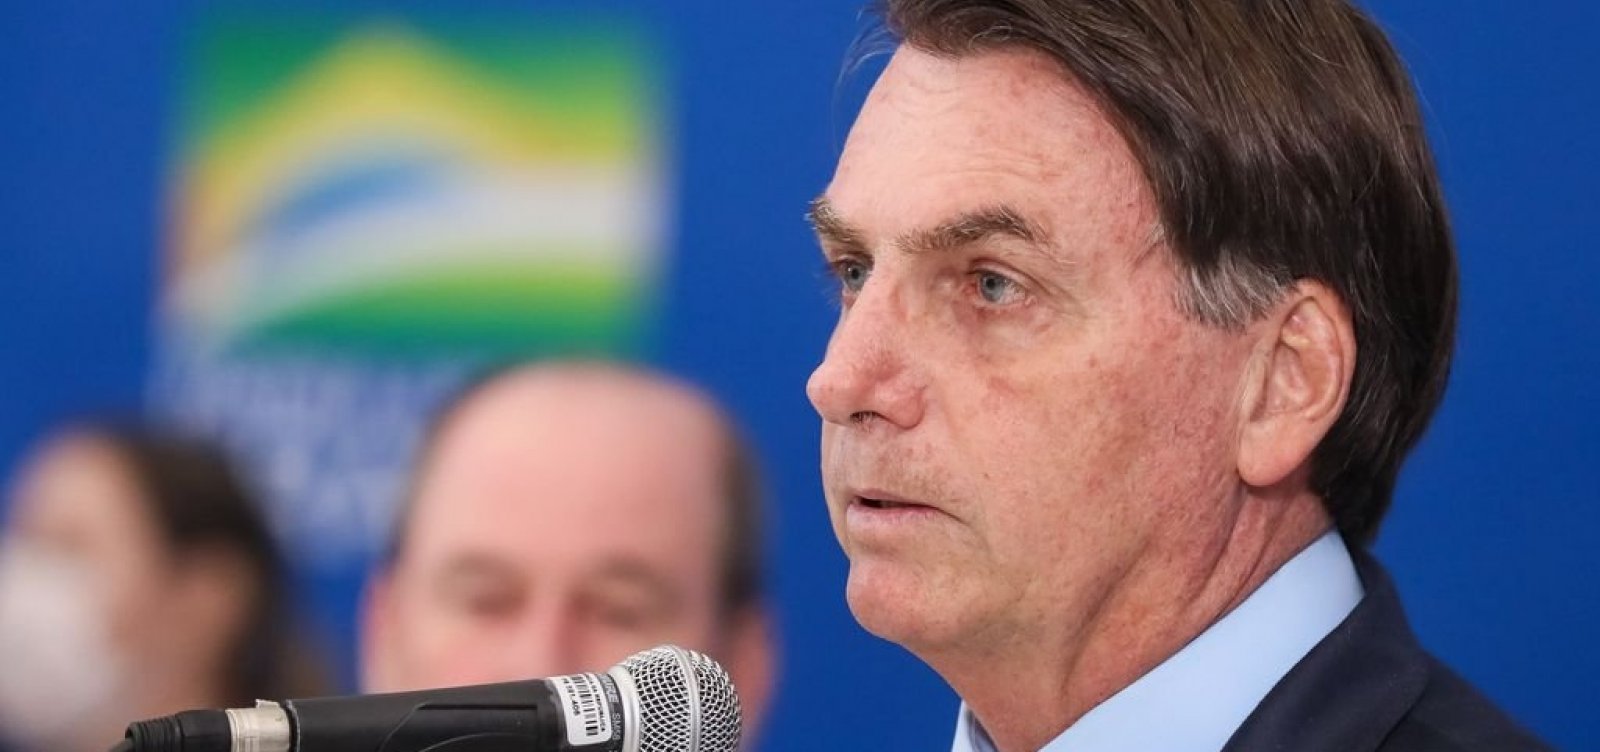 Governo se nega a revelar exame de Bolsonaro por Lei de Acesso à Informação